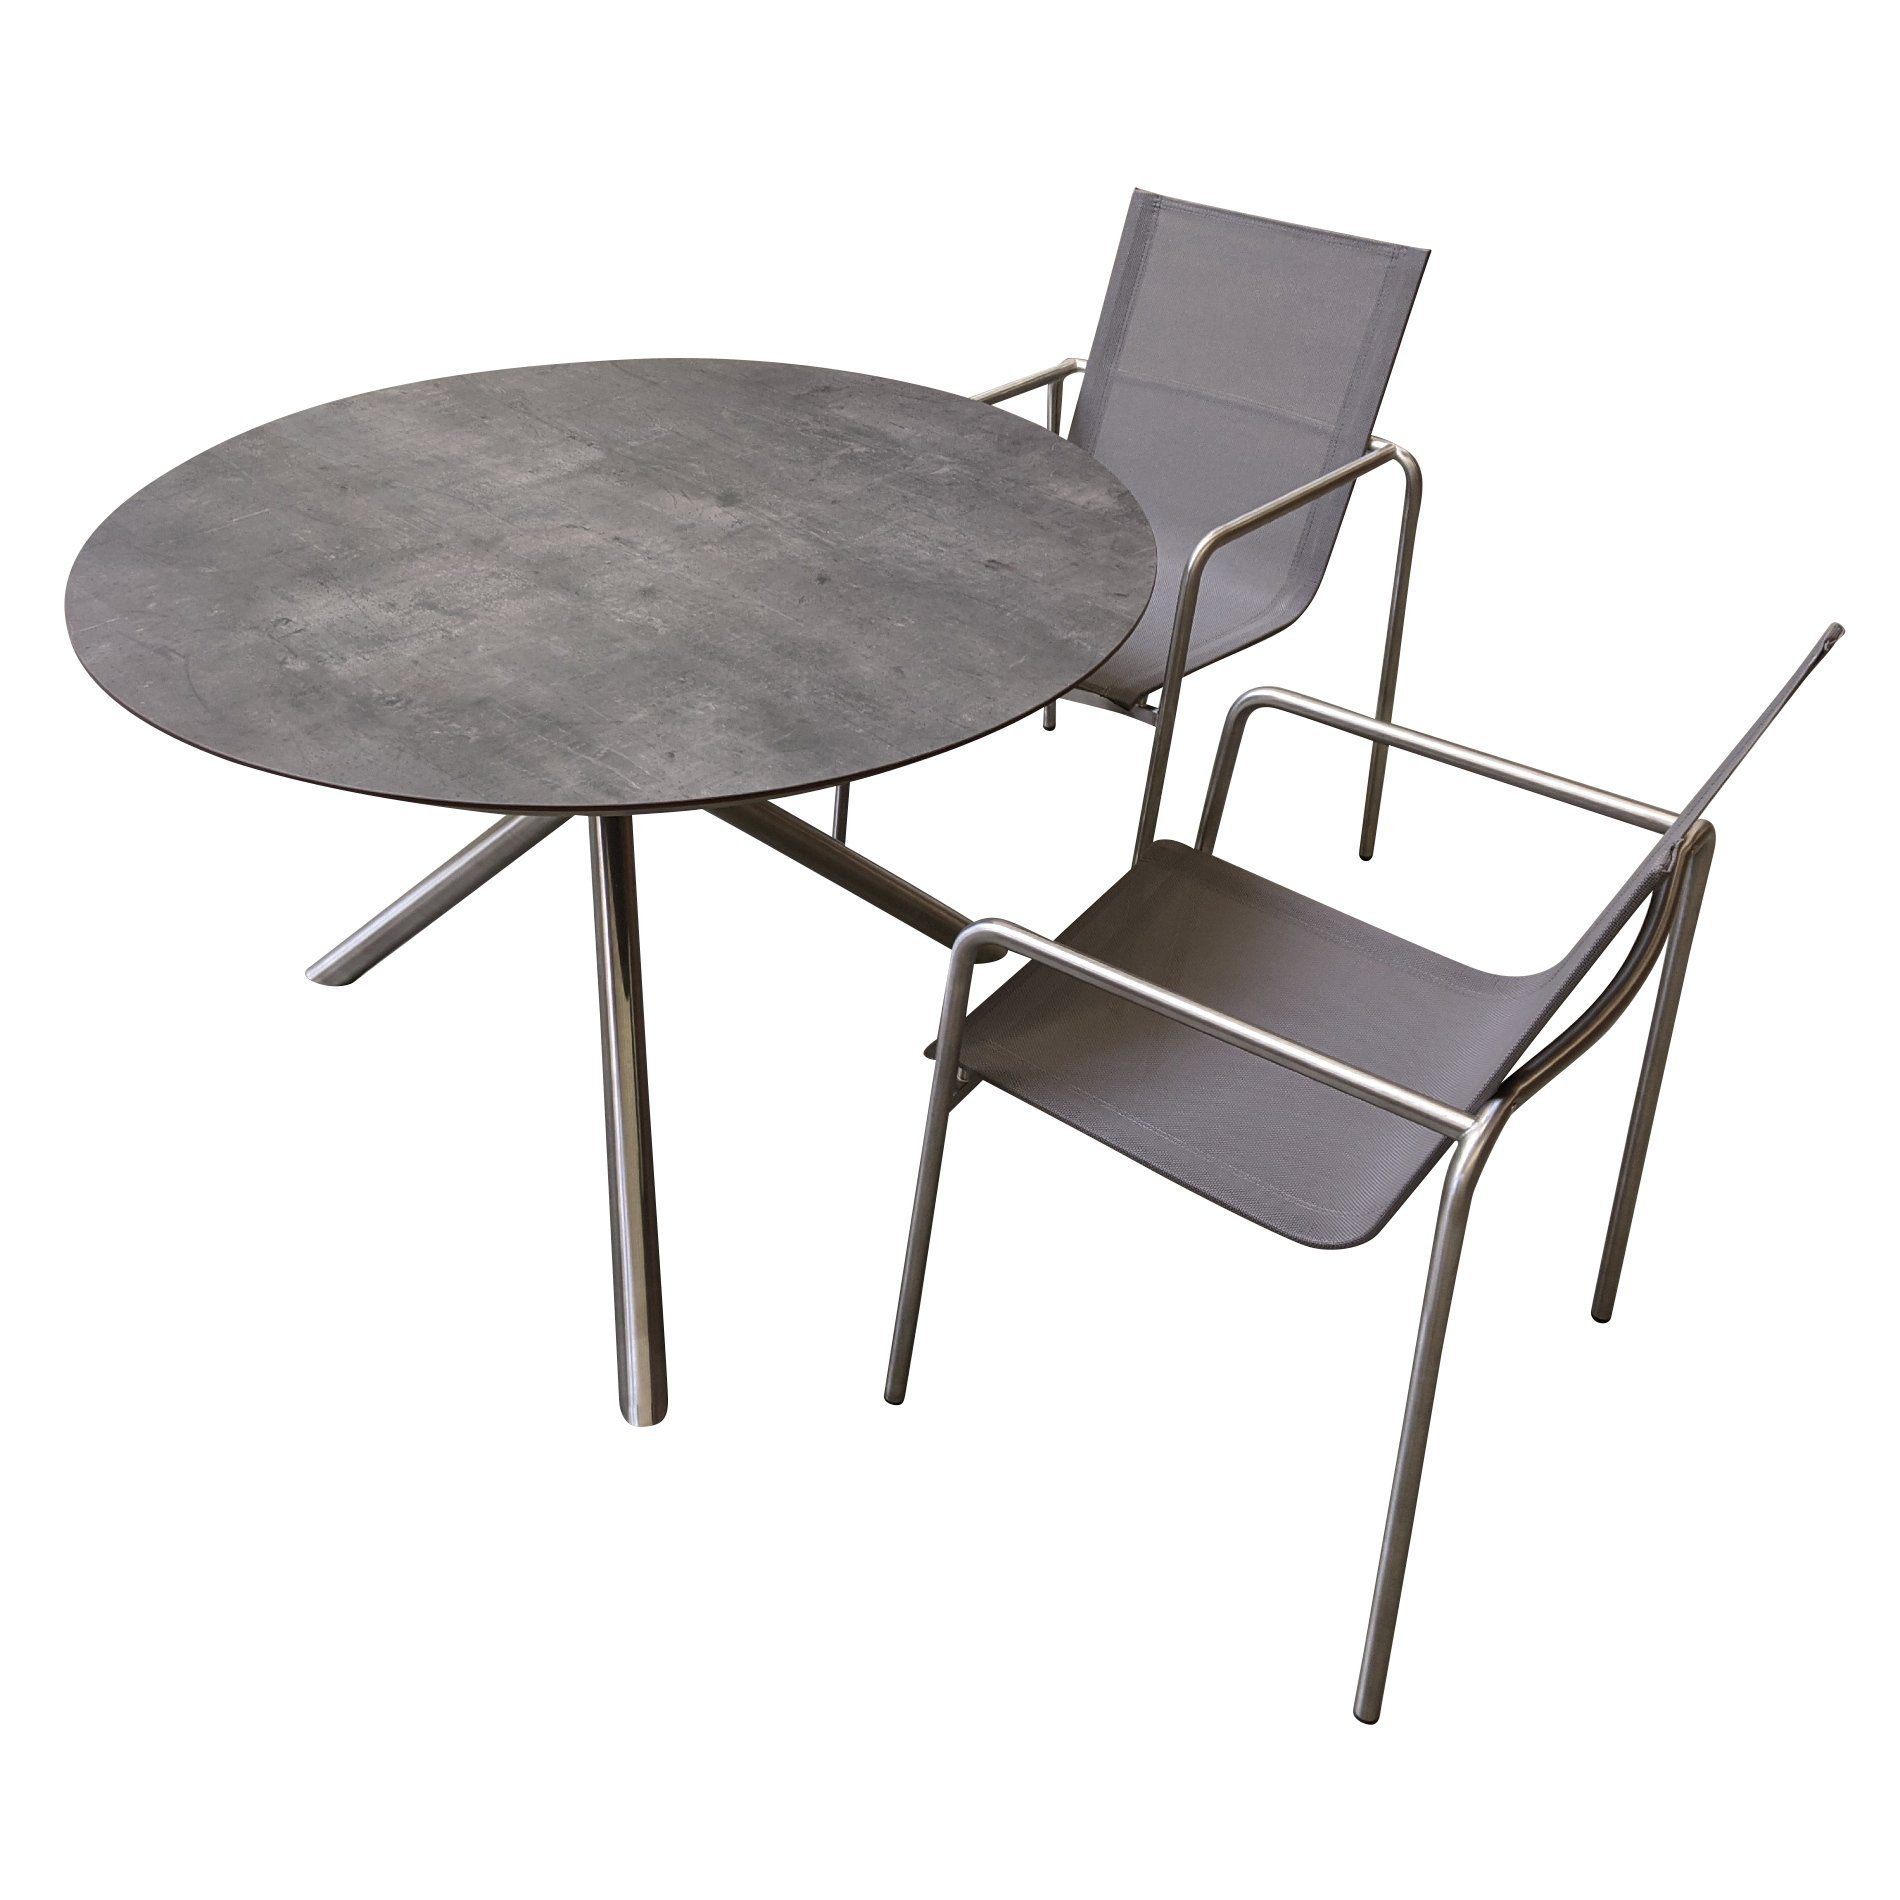 Ploß "Carlos" Tisch mit "Amado" Stapelsessel, Gestelle Edelstahl gebrushed, Sitzfläche Textilgewebe taupe, Tischplatte HPL anthrazit marmoriert